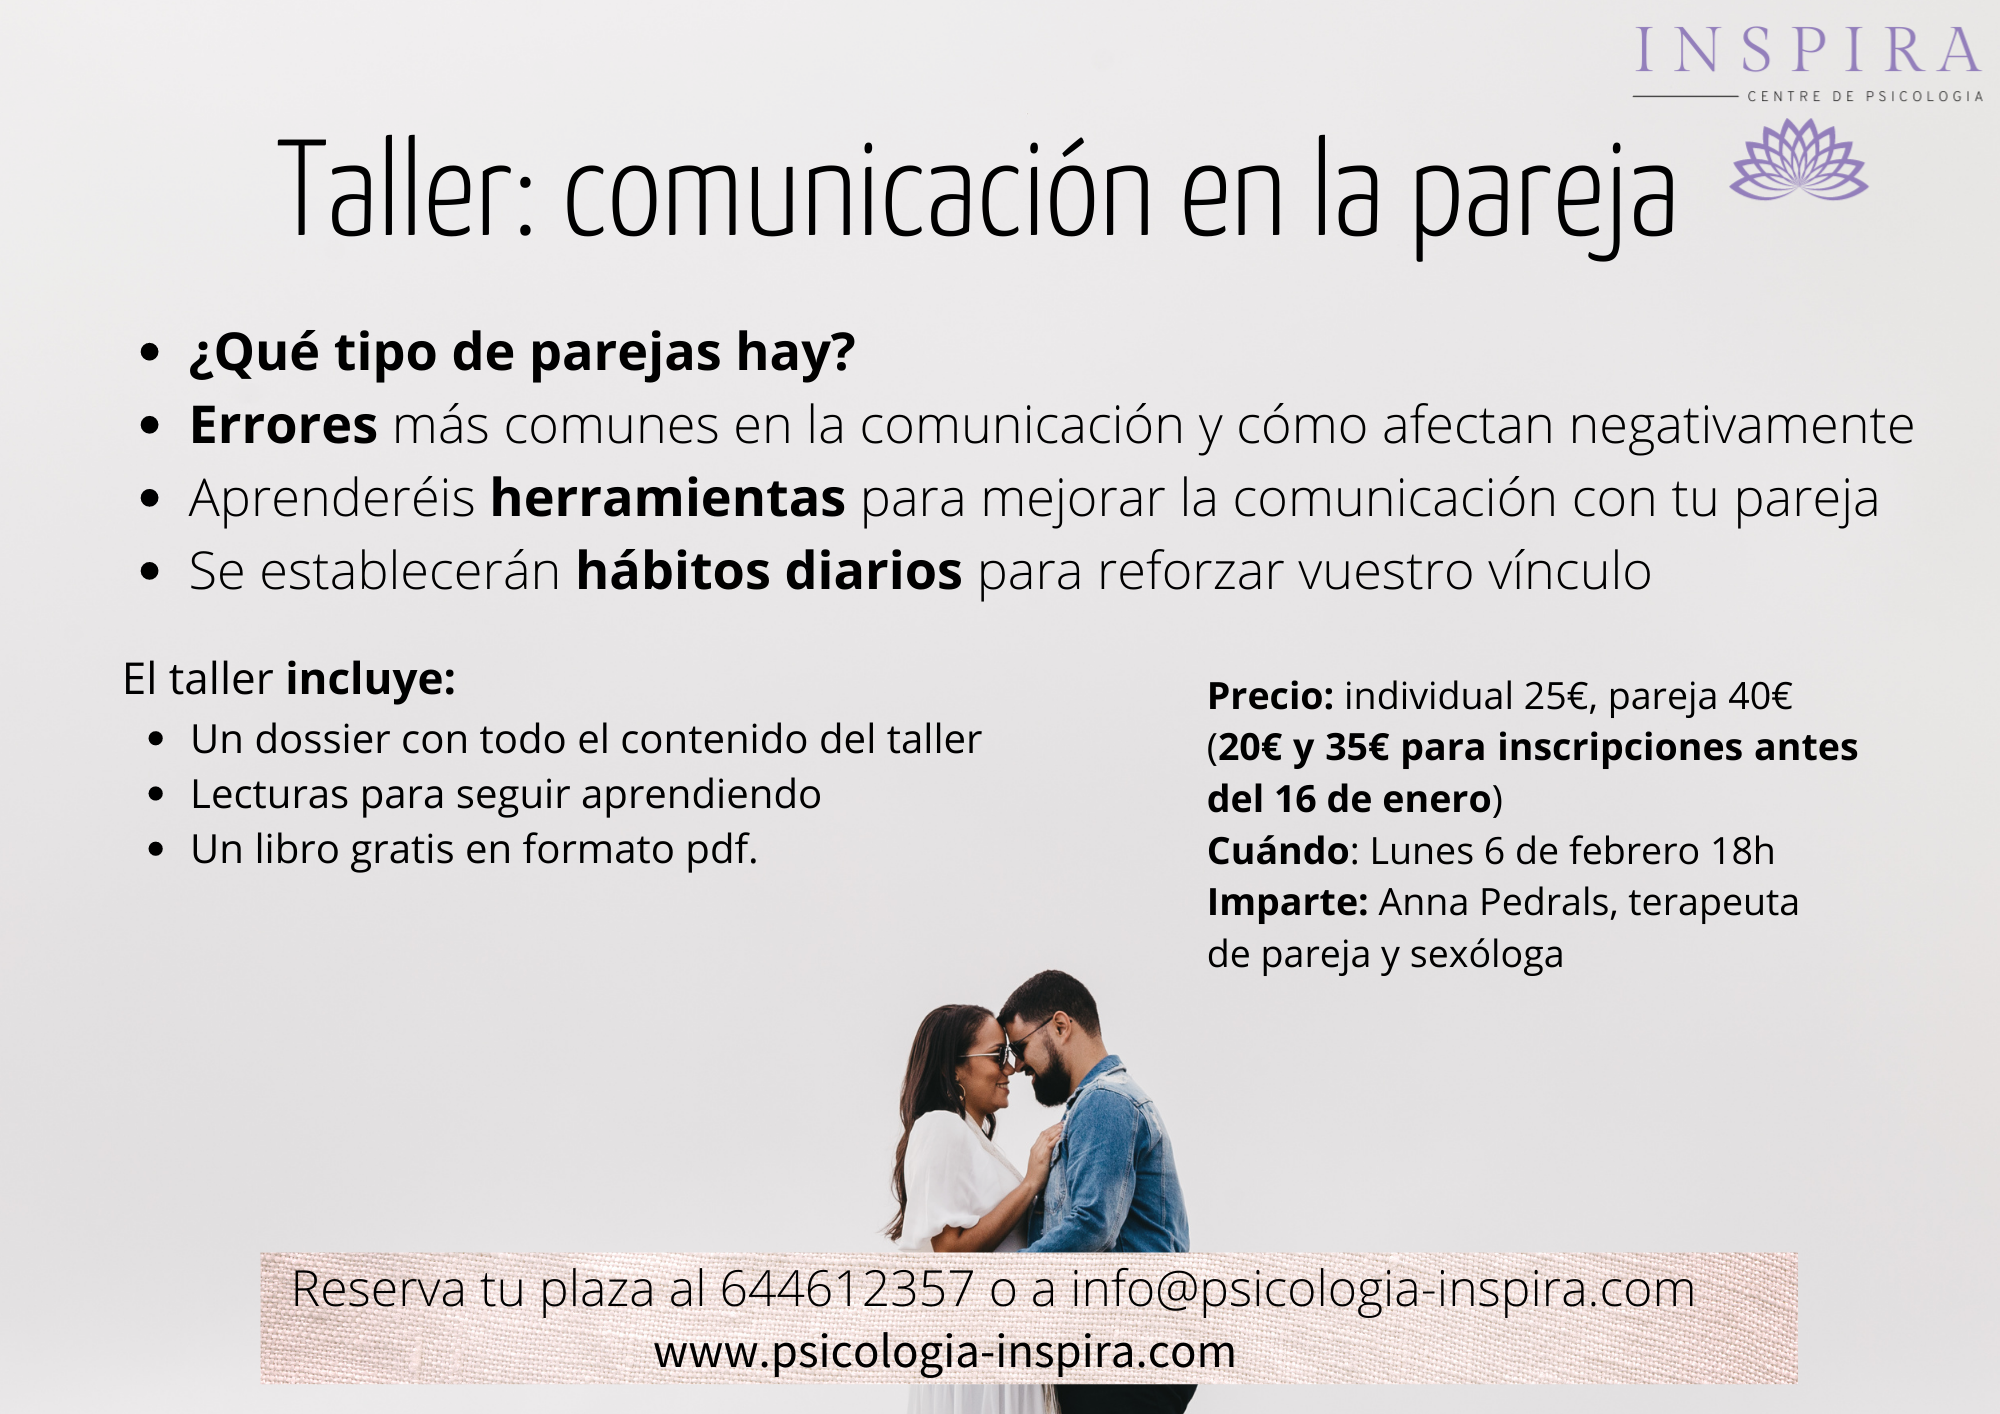 Taller comunicación en la pareja - Psicología Inspira